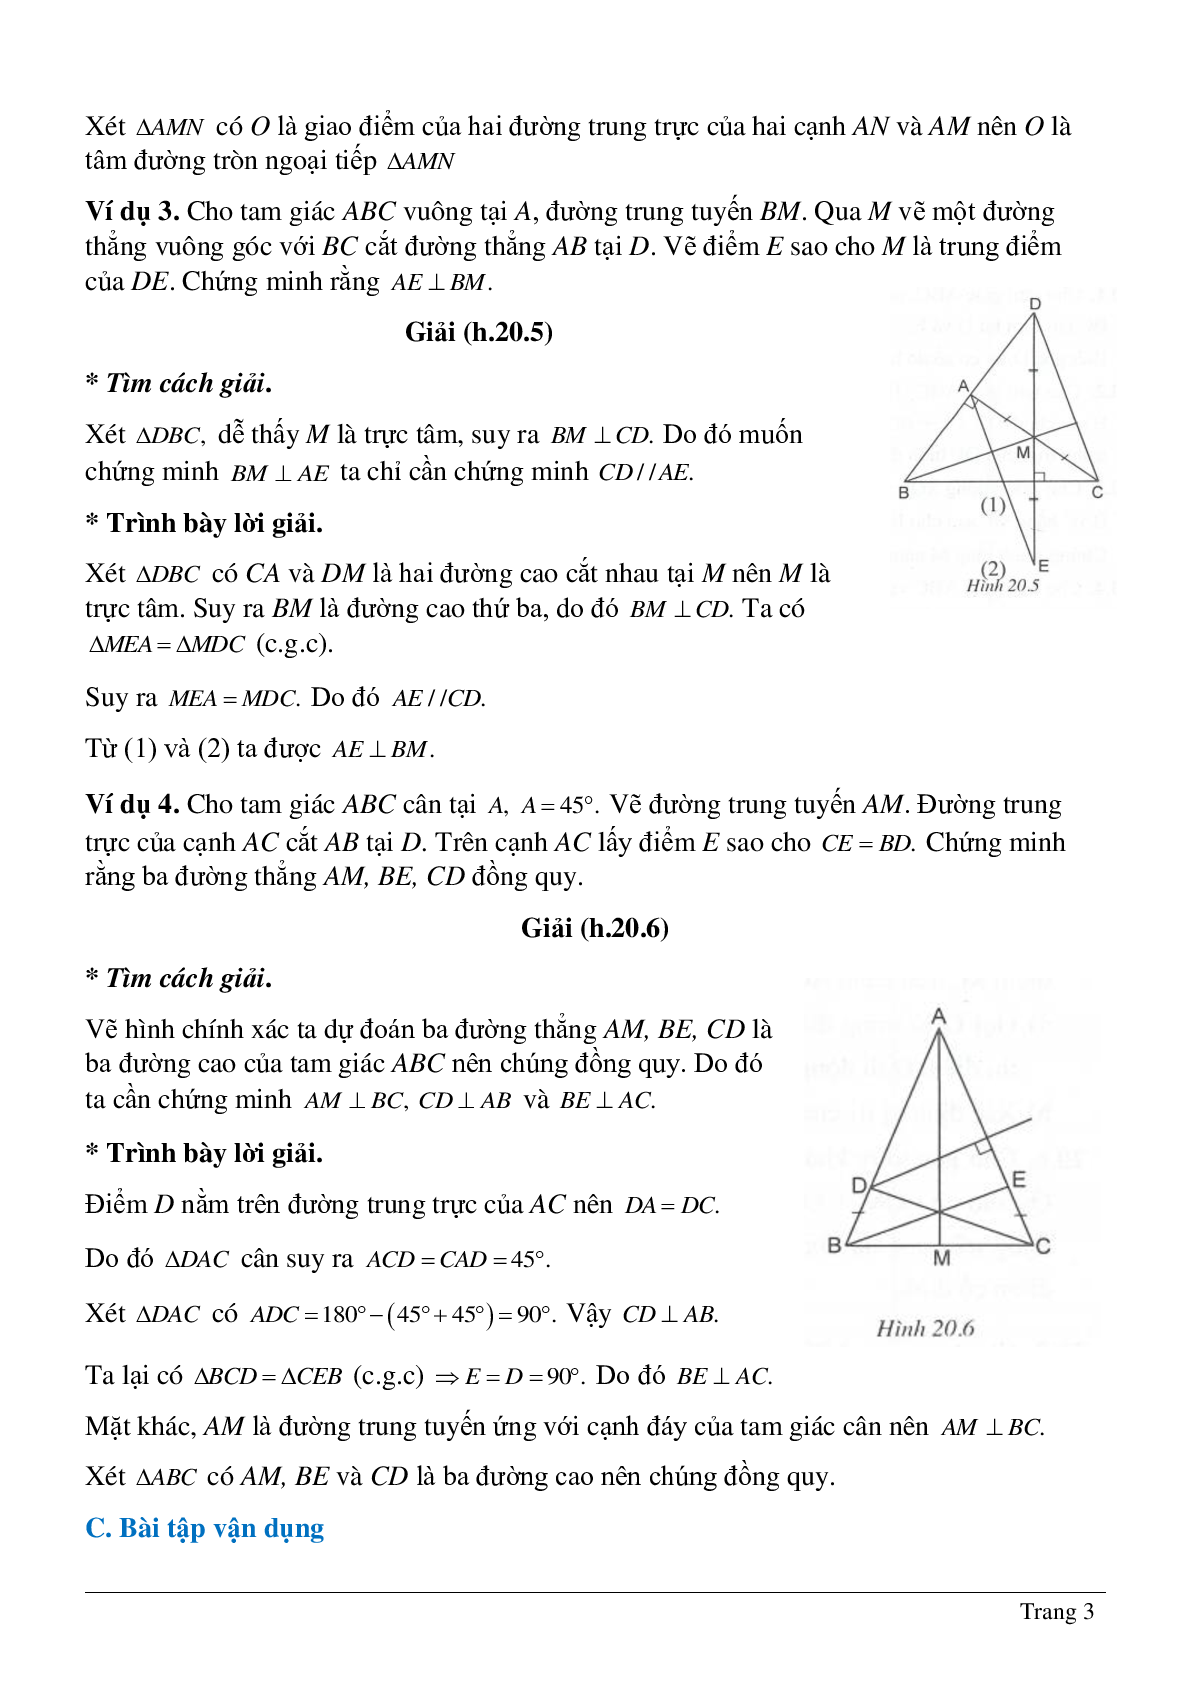 Tổng hợp những bài tập về Tính chất ba đường trung trực, ba đường cao của tam giác có lời giải (trang 3)